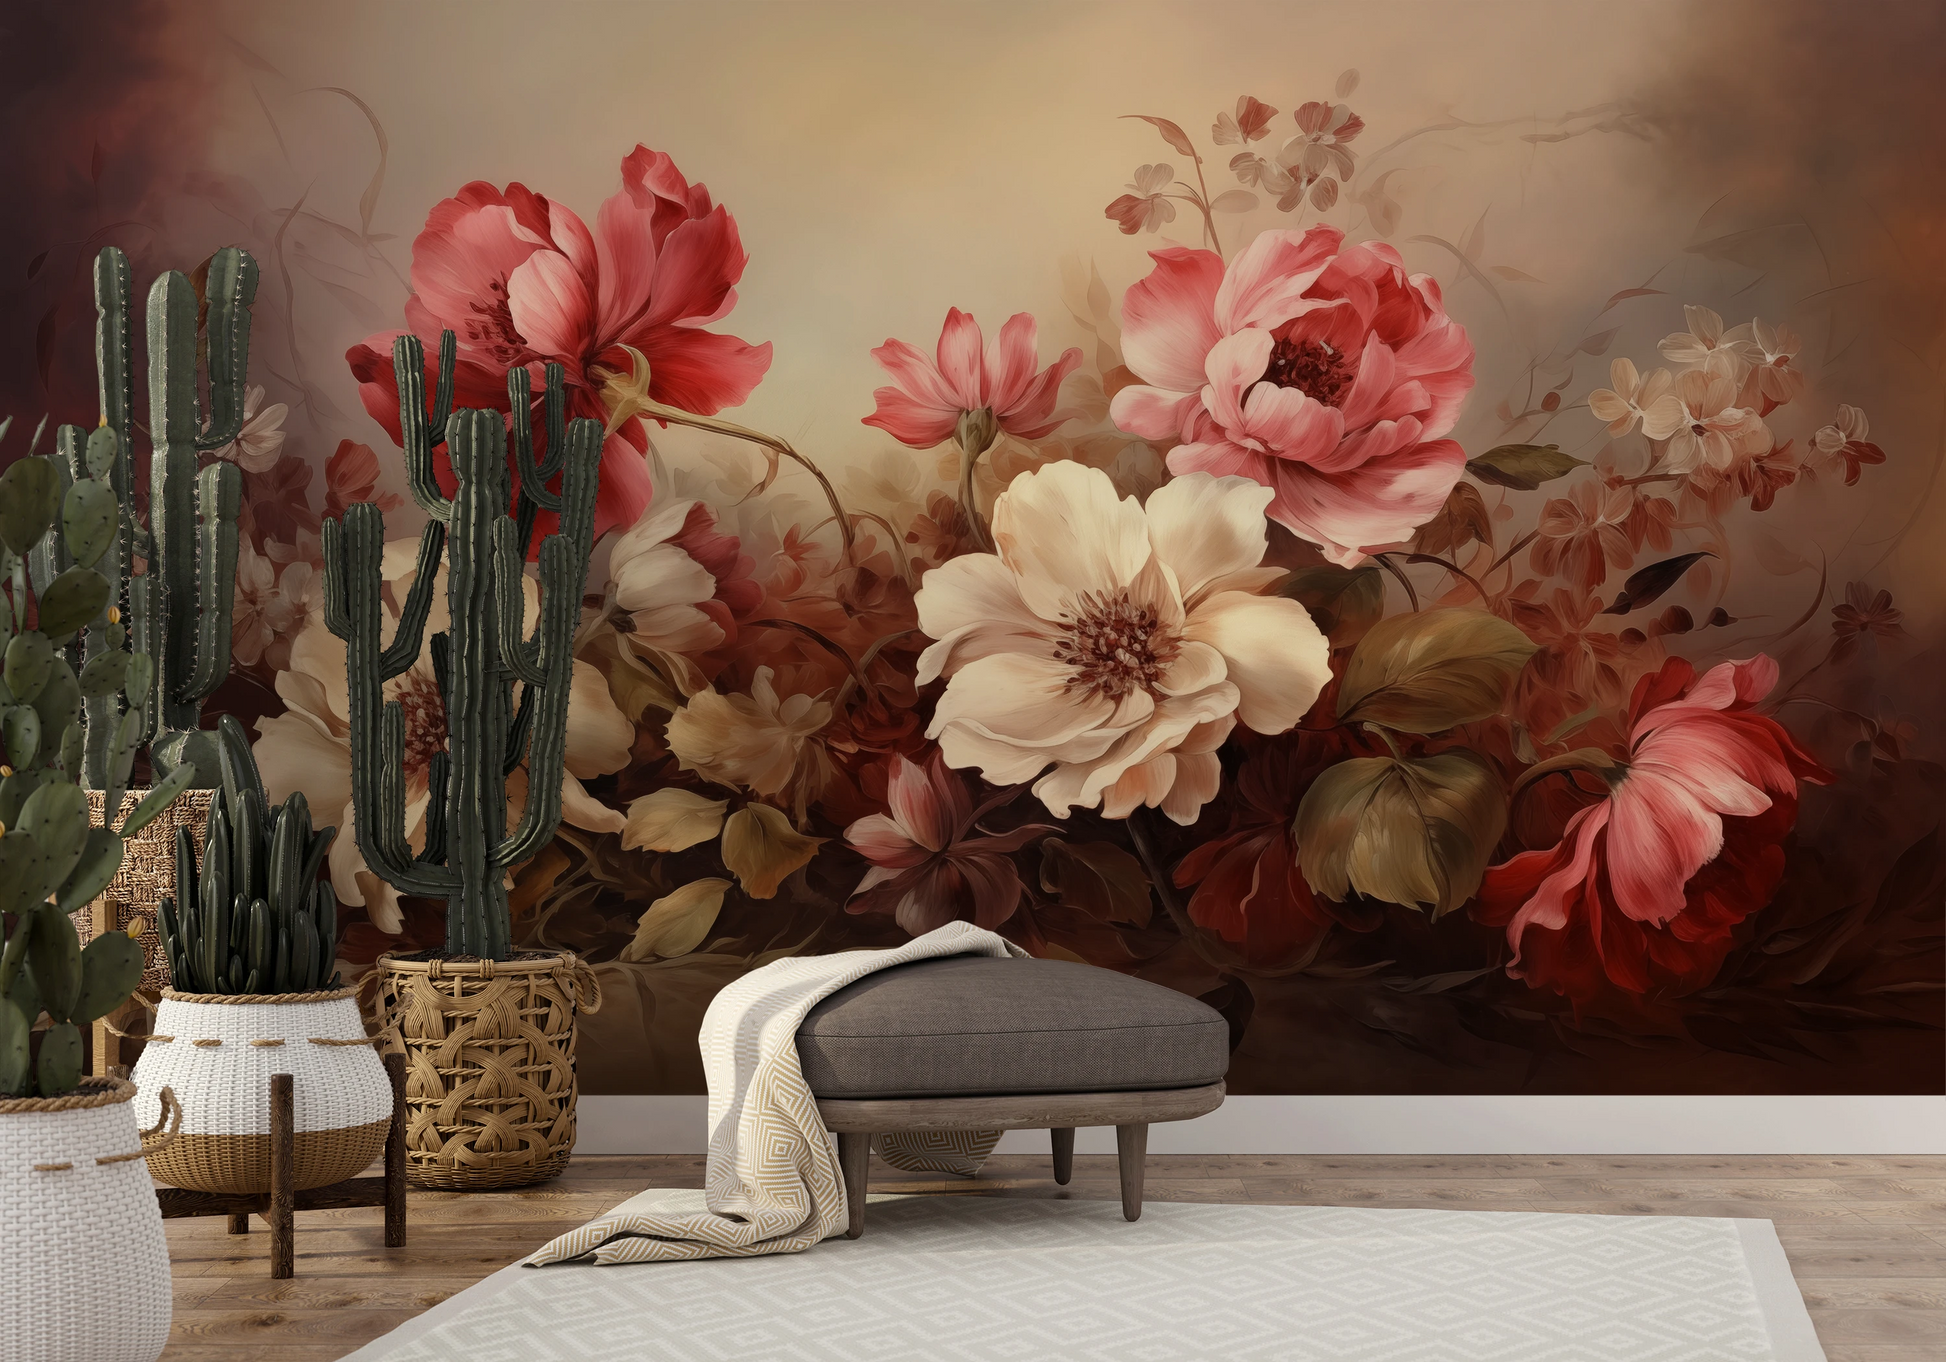 Fototapeta artystyczna o nazwie Velvet Bloom pokazana w aranżacji wnętrza.